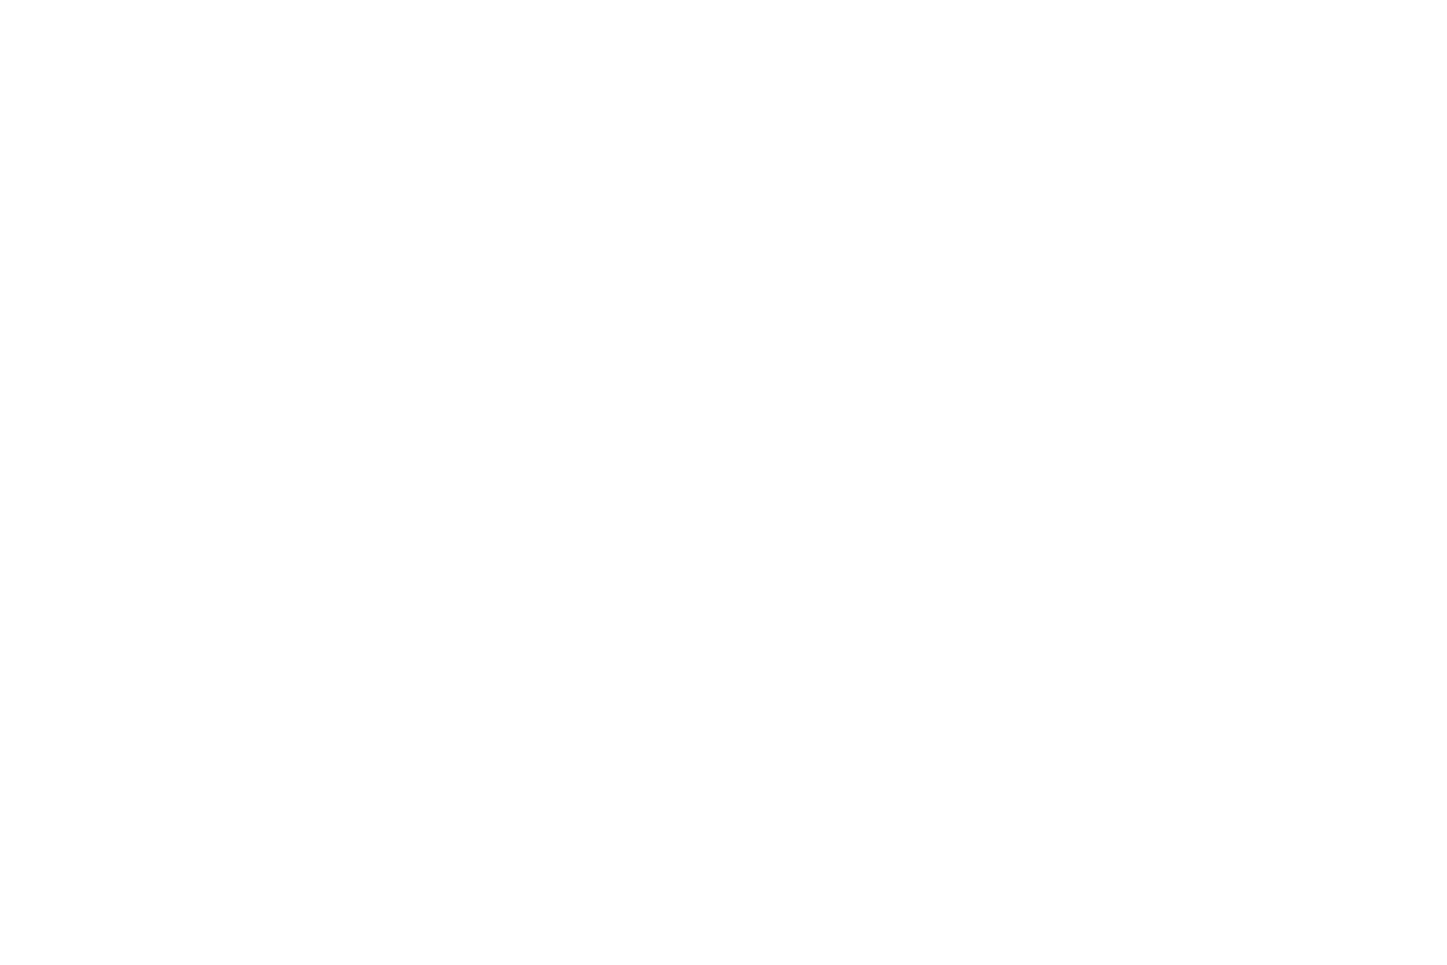 Shears beauty school